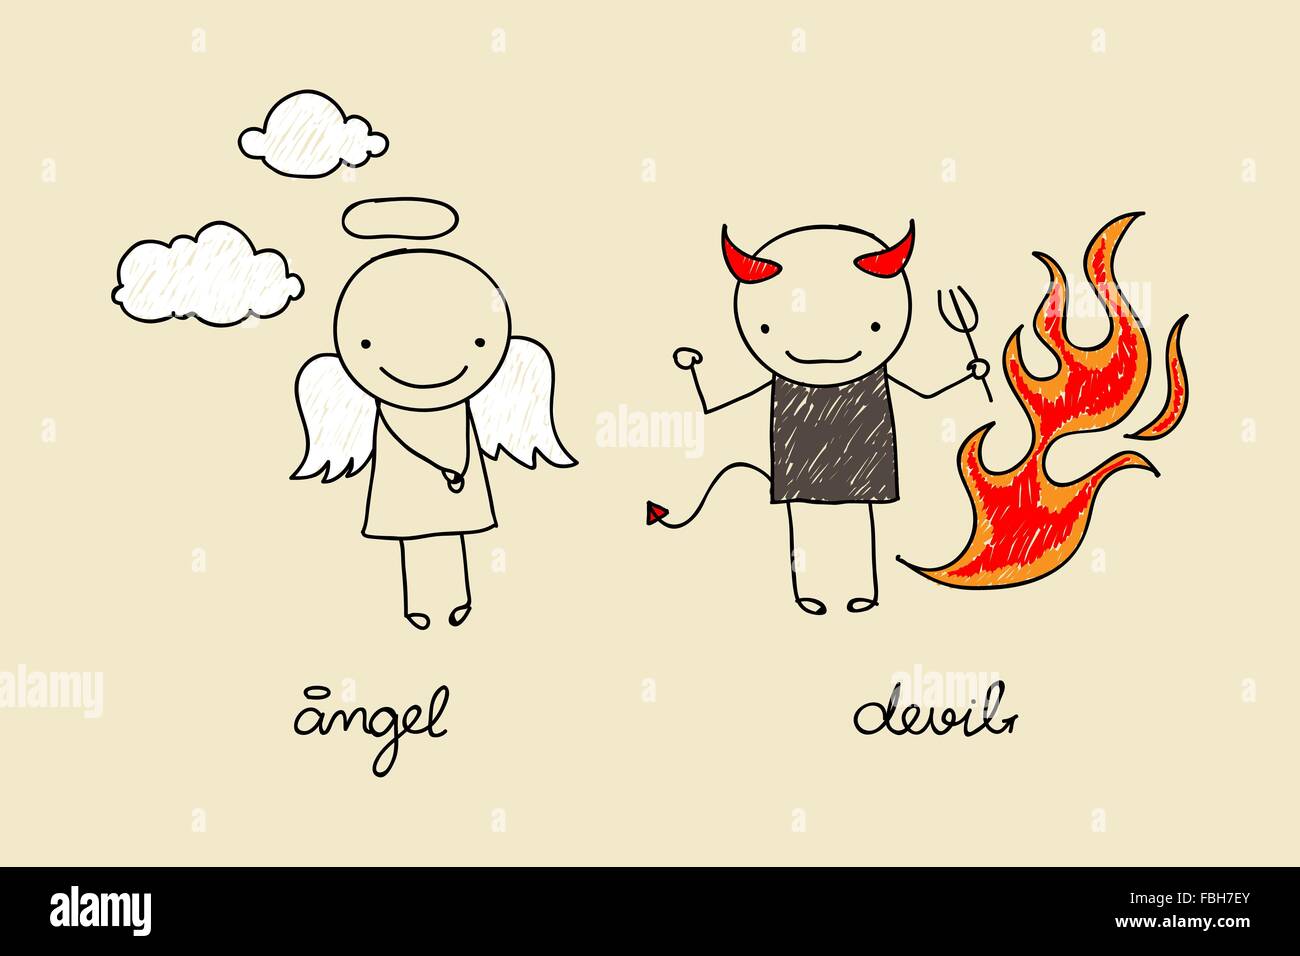 Kindliche Zeichnung mit niedlichen Teufel und Engel mit Flammen und Wolken Stock Vektor